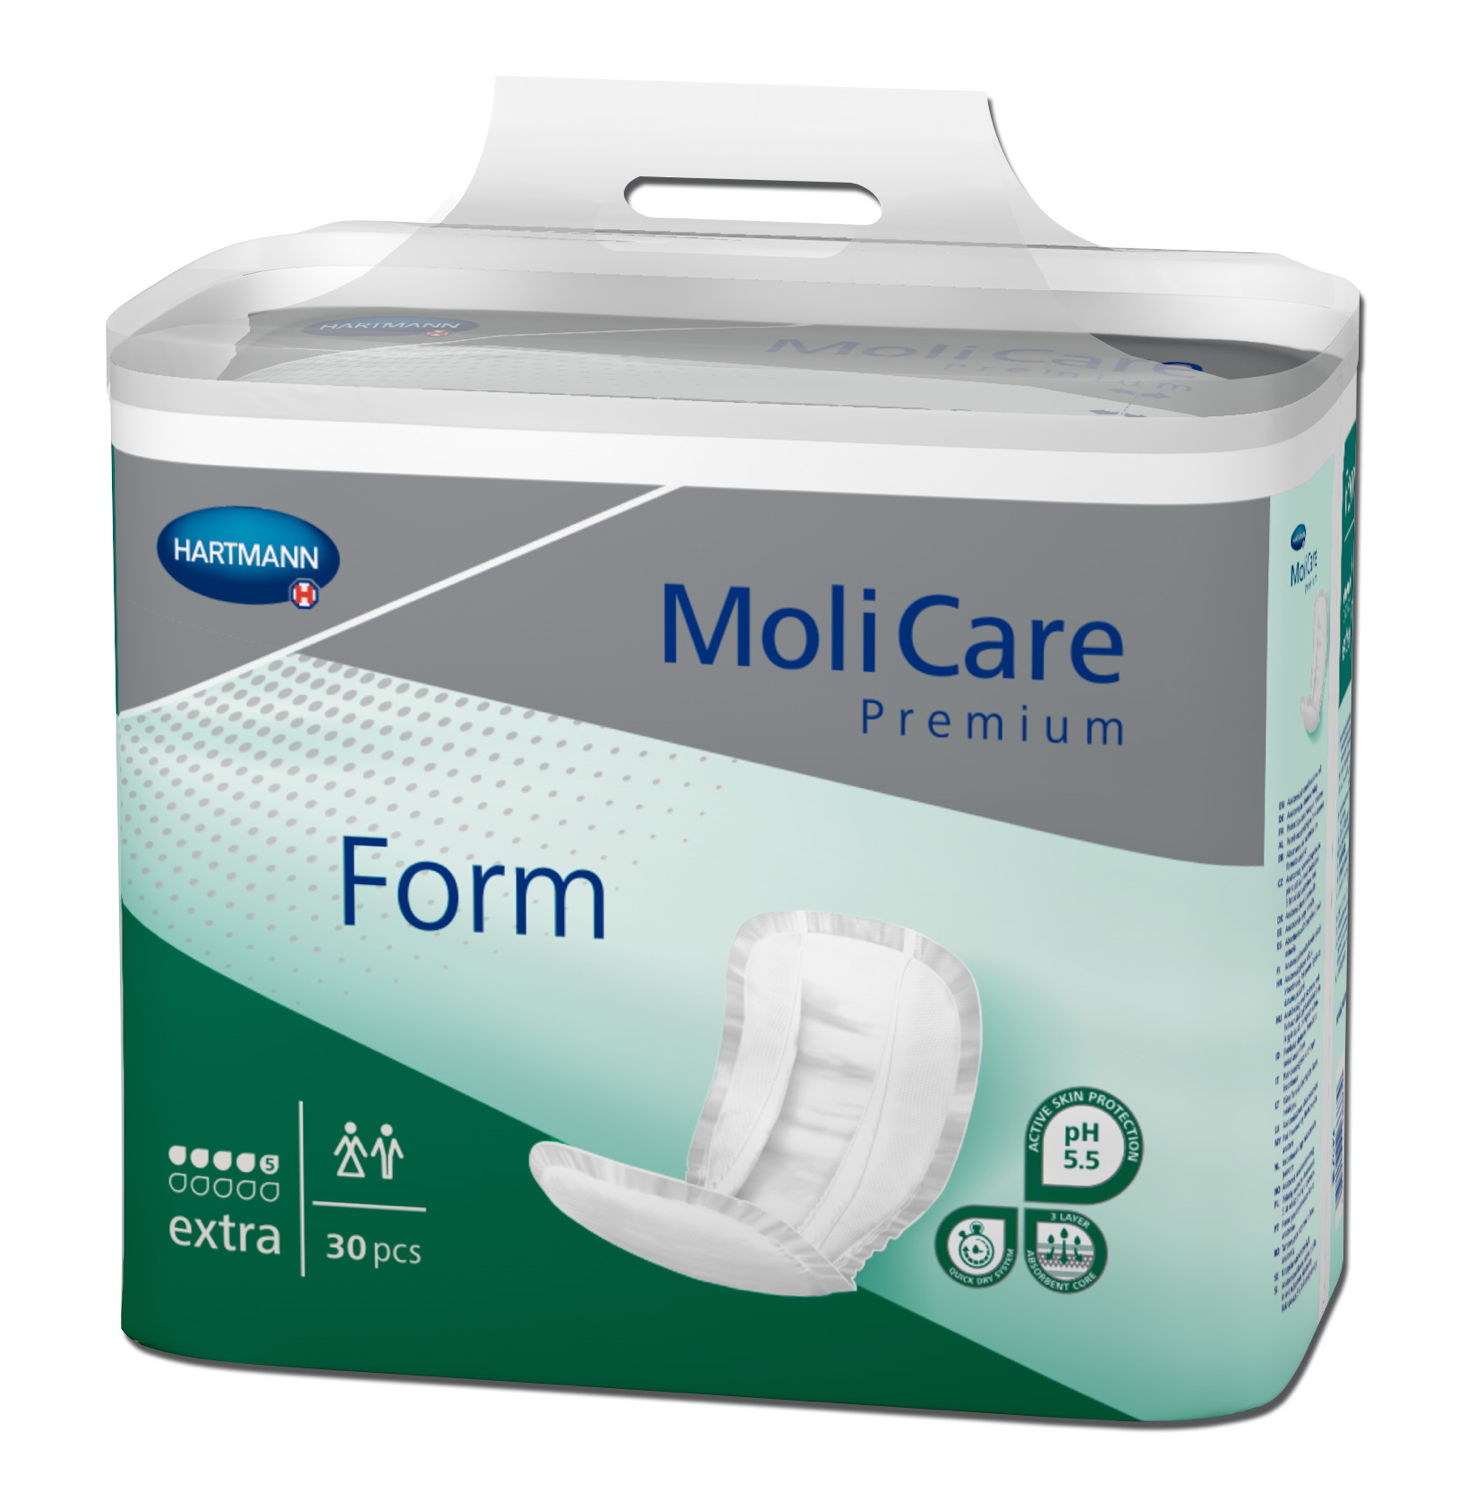 MoliCare Premium Form extra